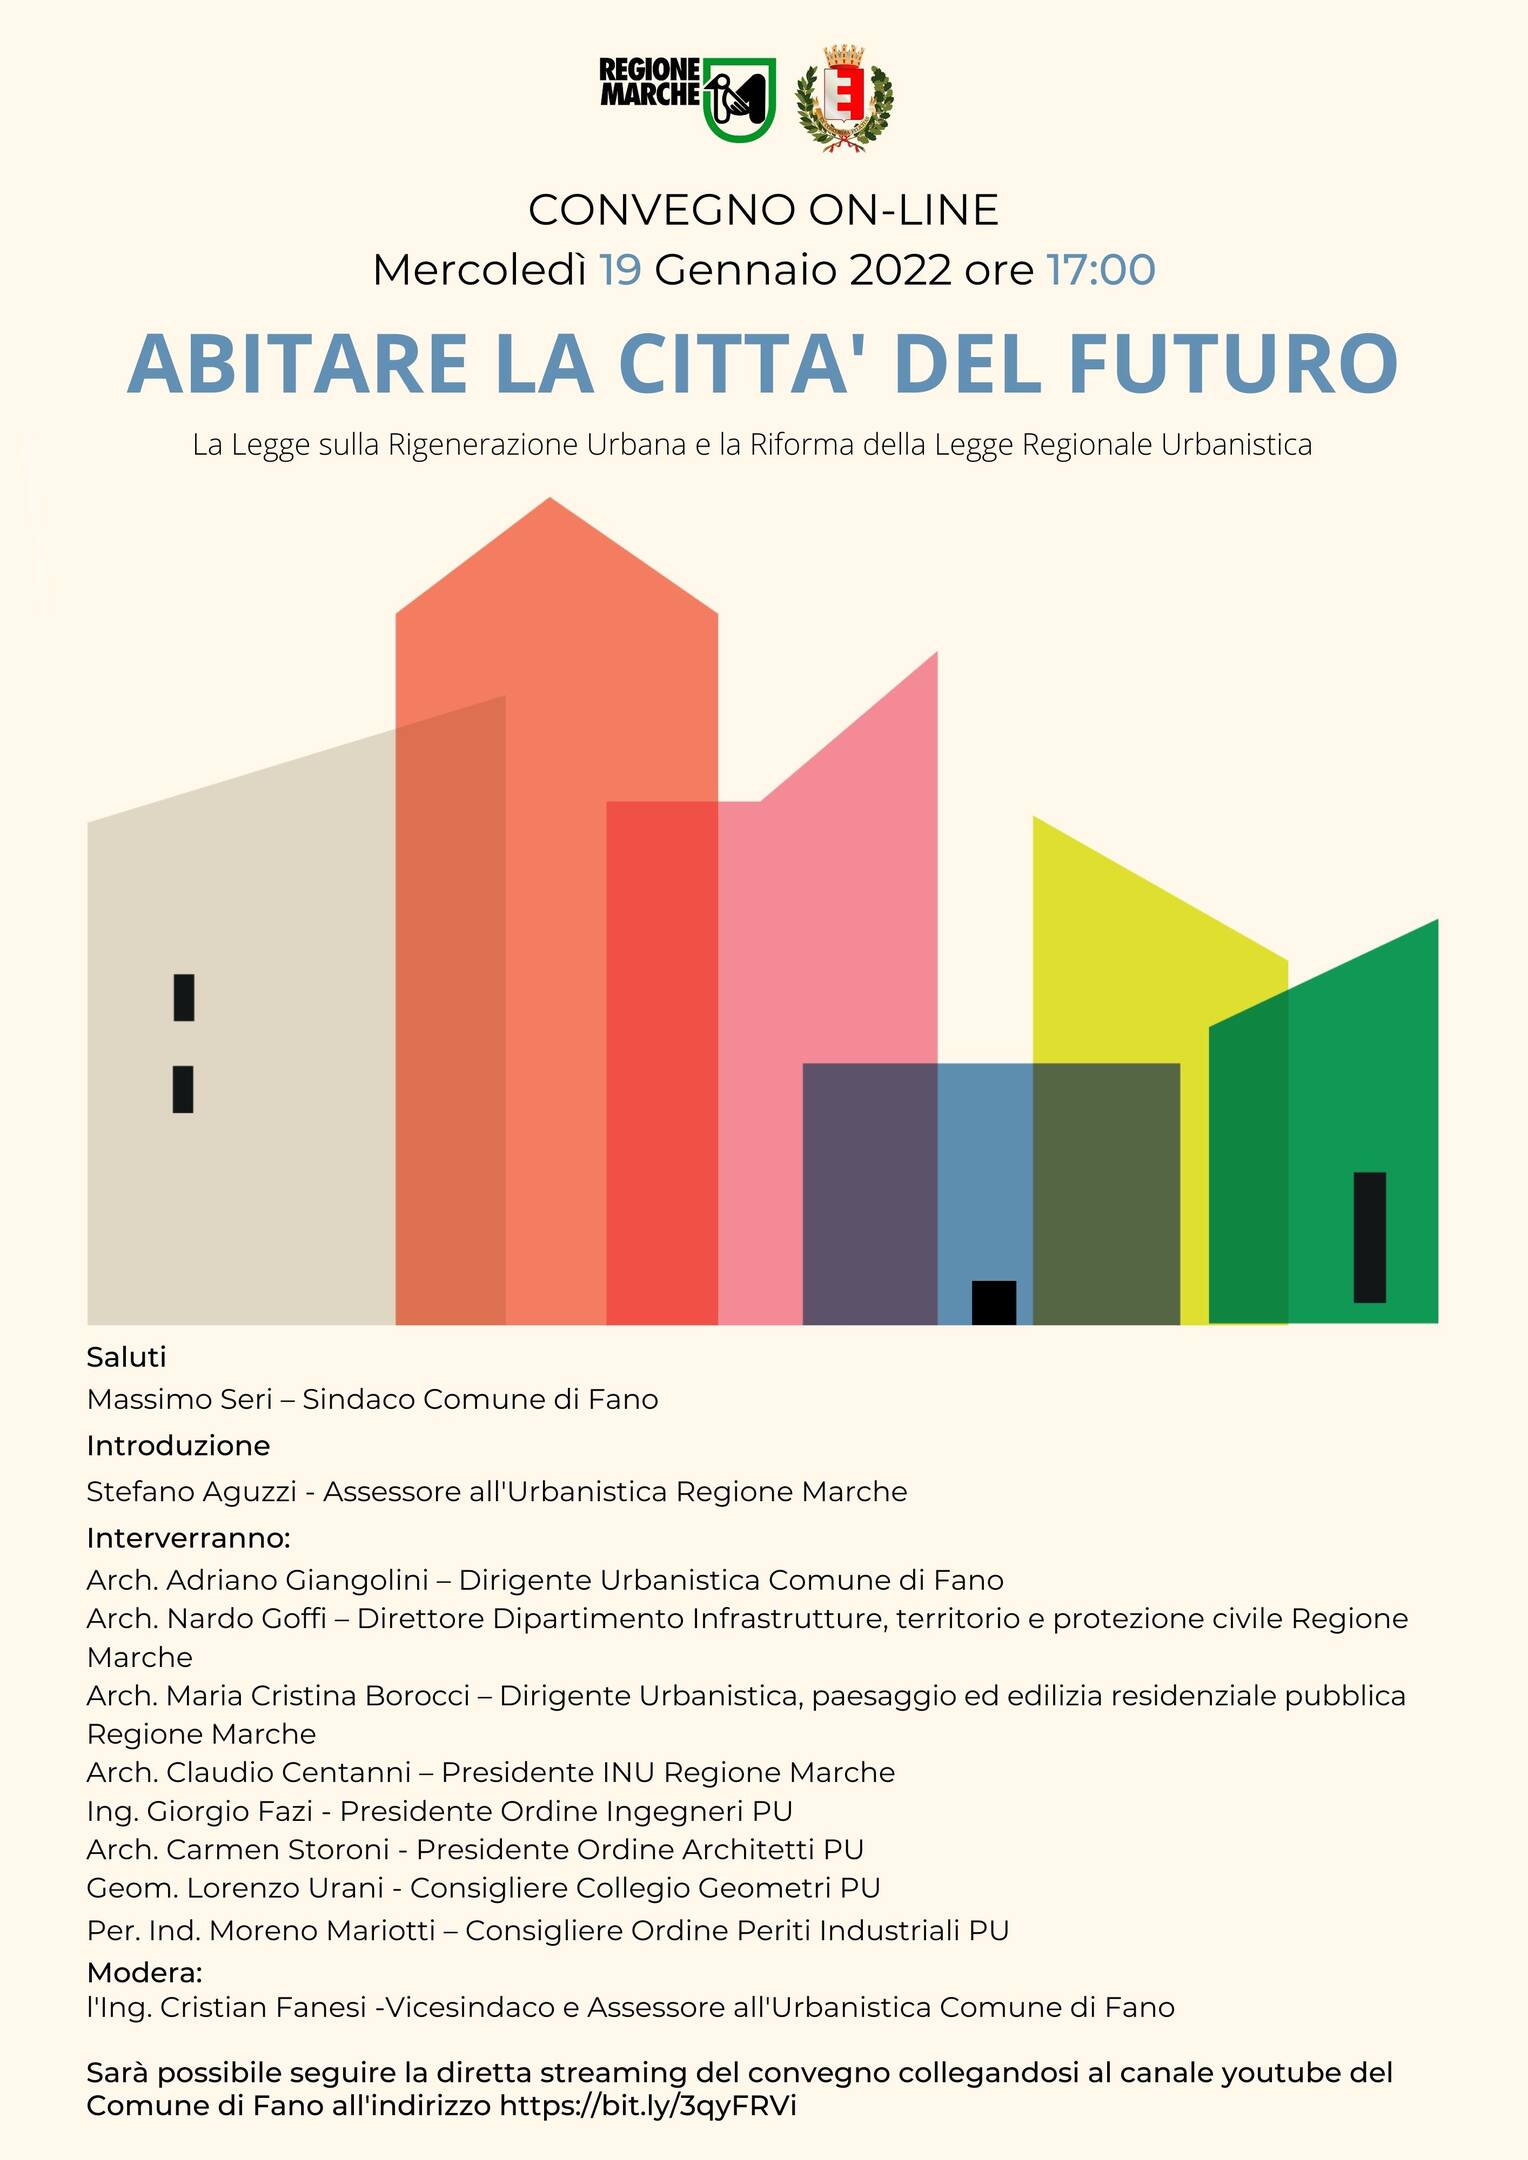 Abitare la Città del Futuro: mercoledì 19 gennaio a Fano si parla della nuova legge Urbanistica Regionale